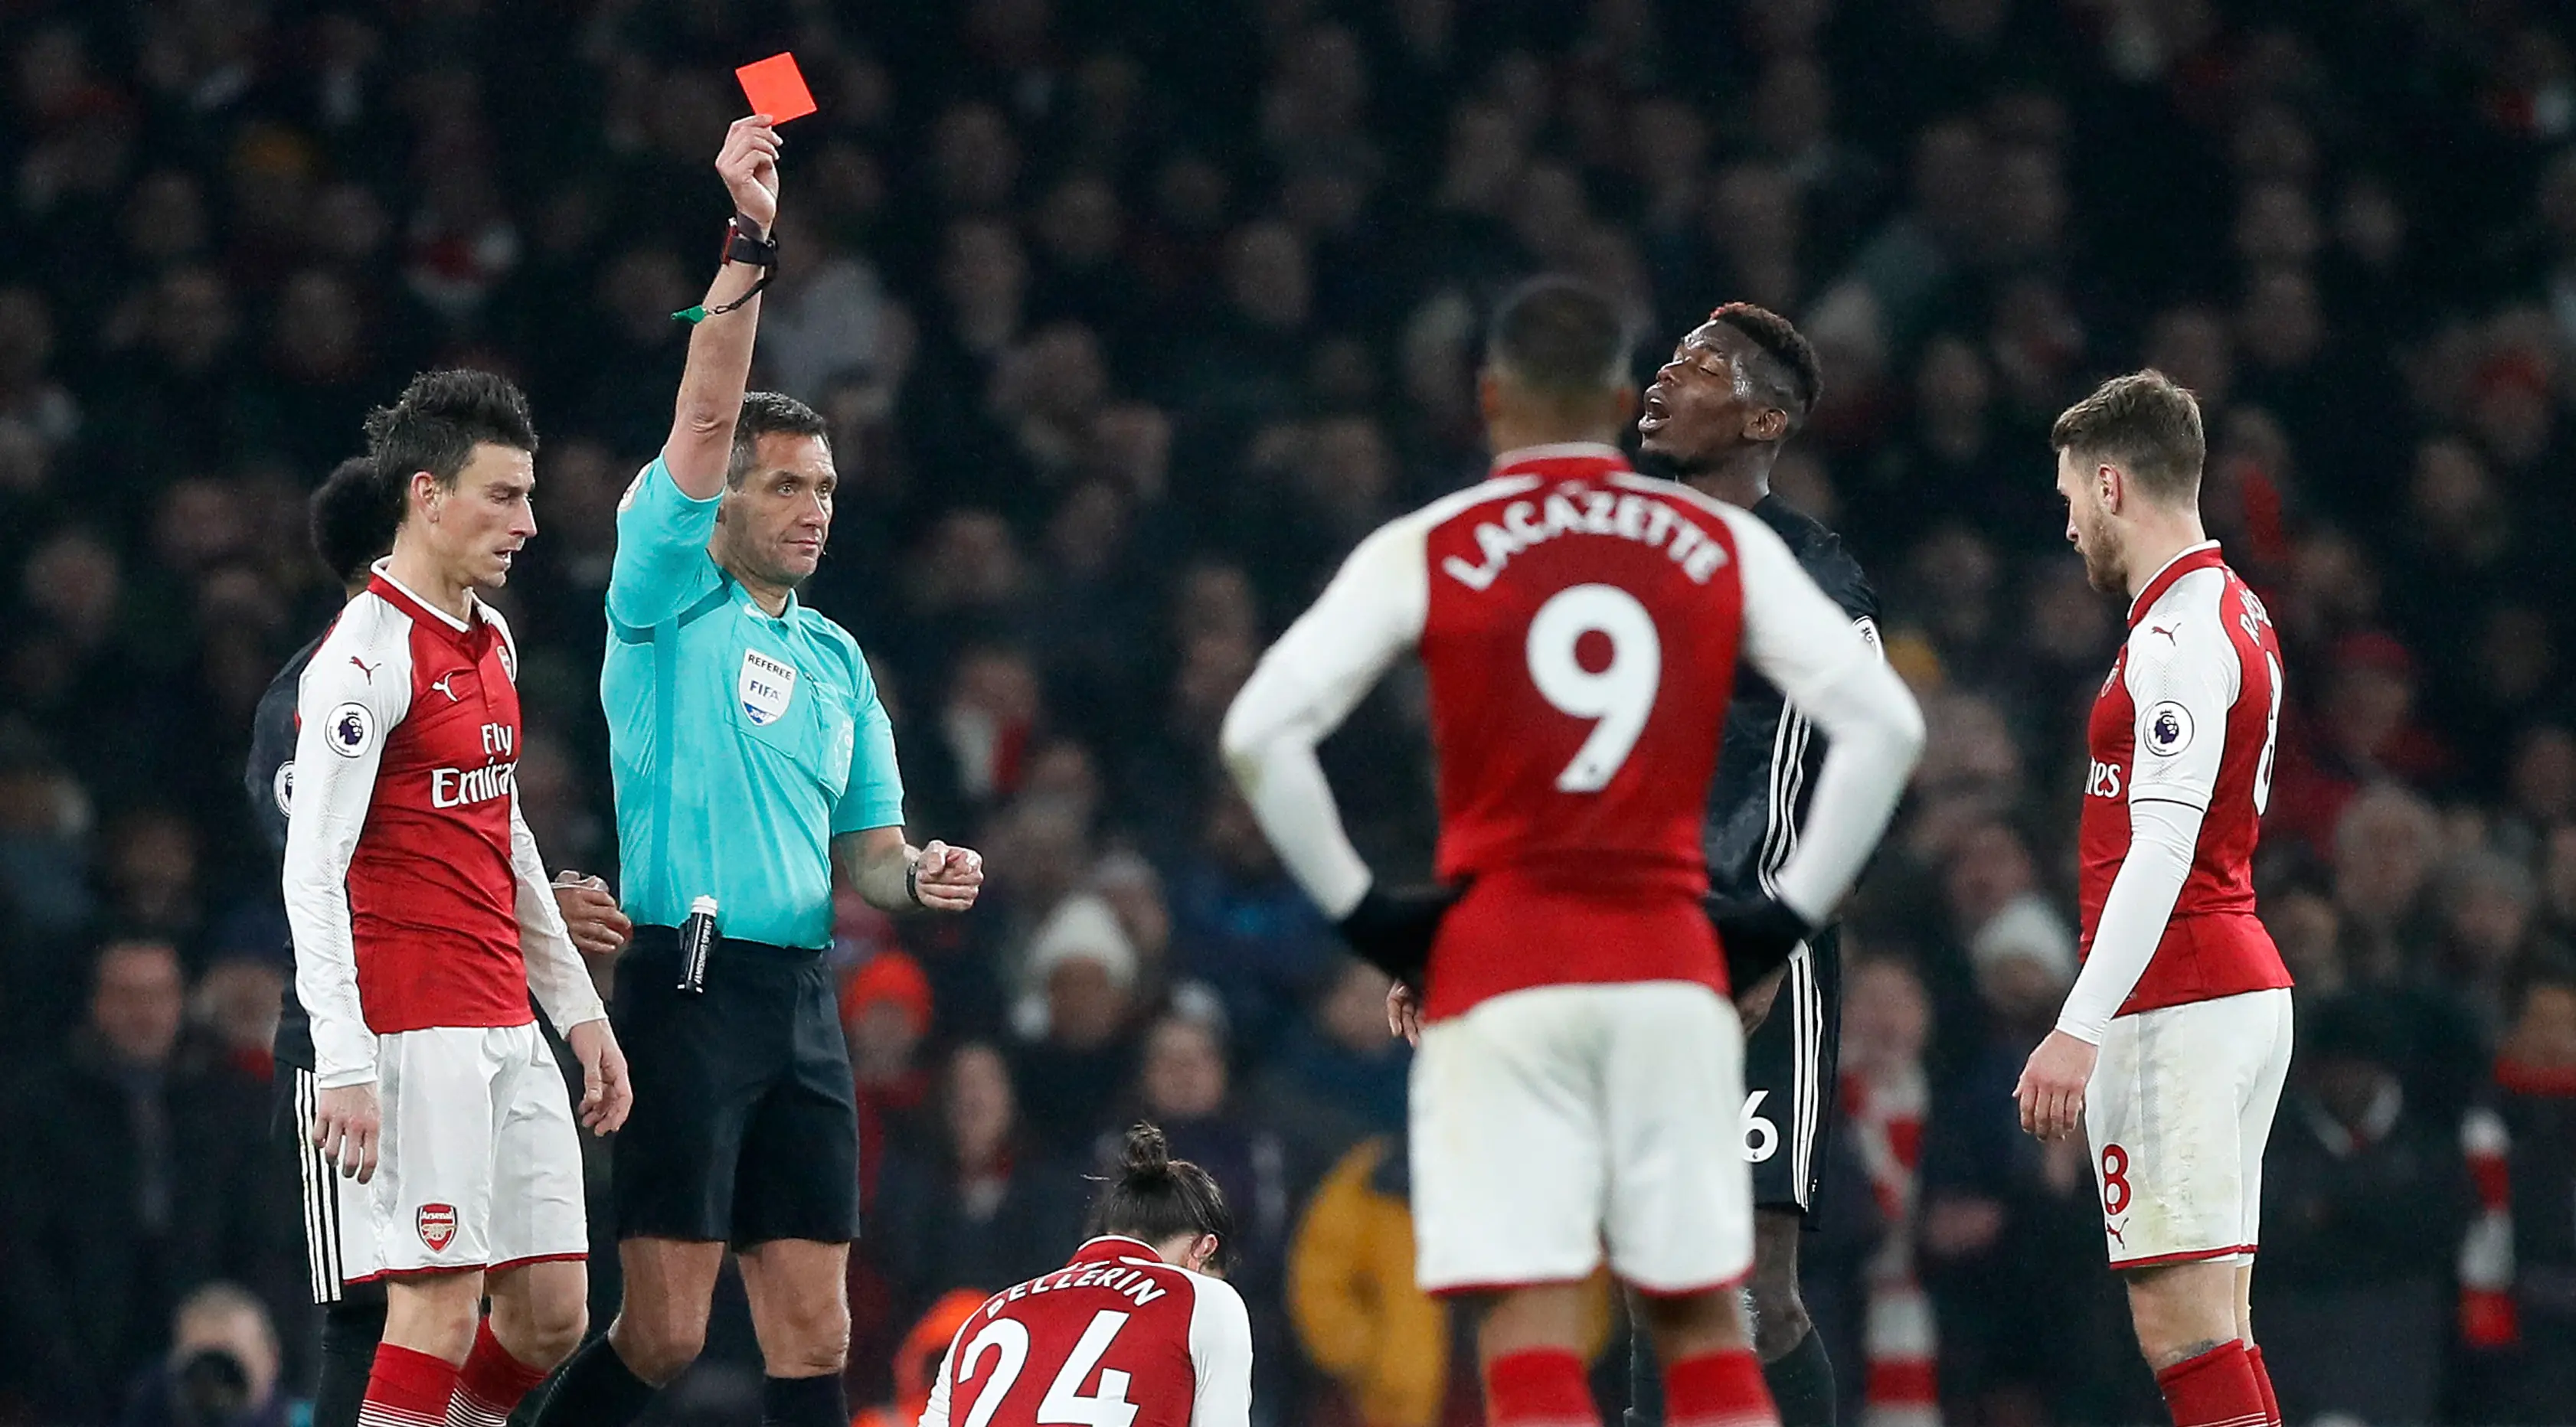 Wasit Andre Marriner memberikan kartu merah kepada pemain Manchester United (MU), Paul Pogba saat melawan Arsenal dalam pertandingan Liga Inggris di Stadion Emirates, London Sabtu (2/12/2017). (AP Photo/Kirsty Wigglesworth)